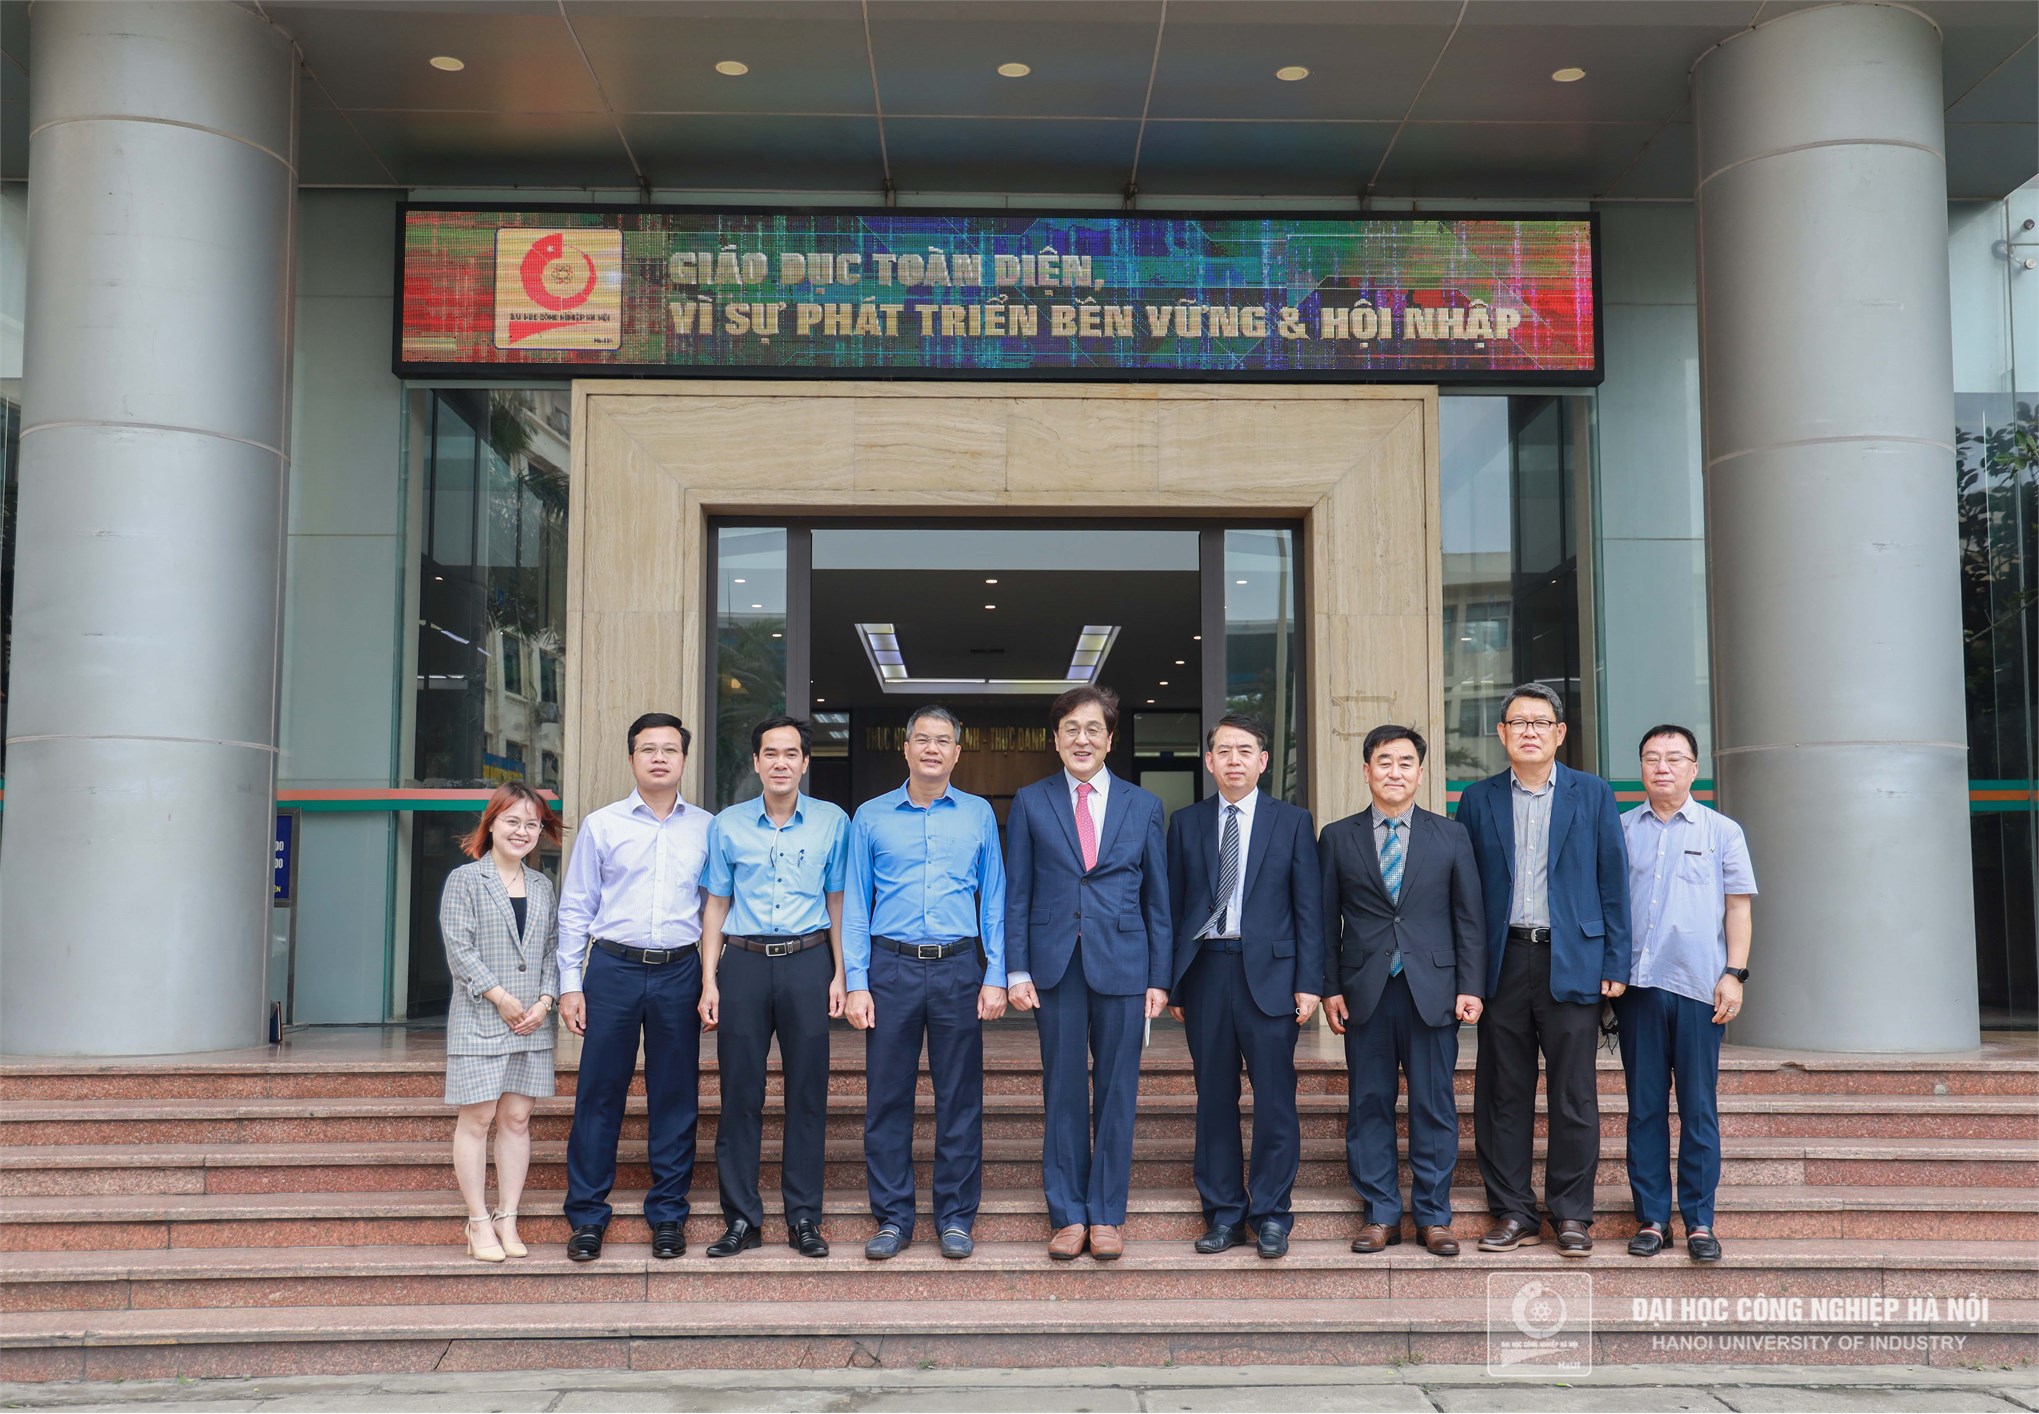 Trường Đại học Công nghiệp Hà Nội ký thỏa thuận hợp tác với Trường Đại học tỉnh Gangwon, Hàn Quốc